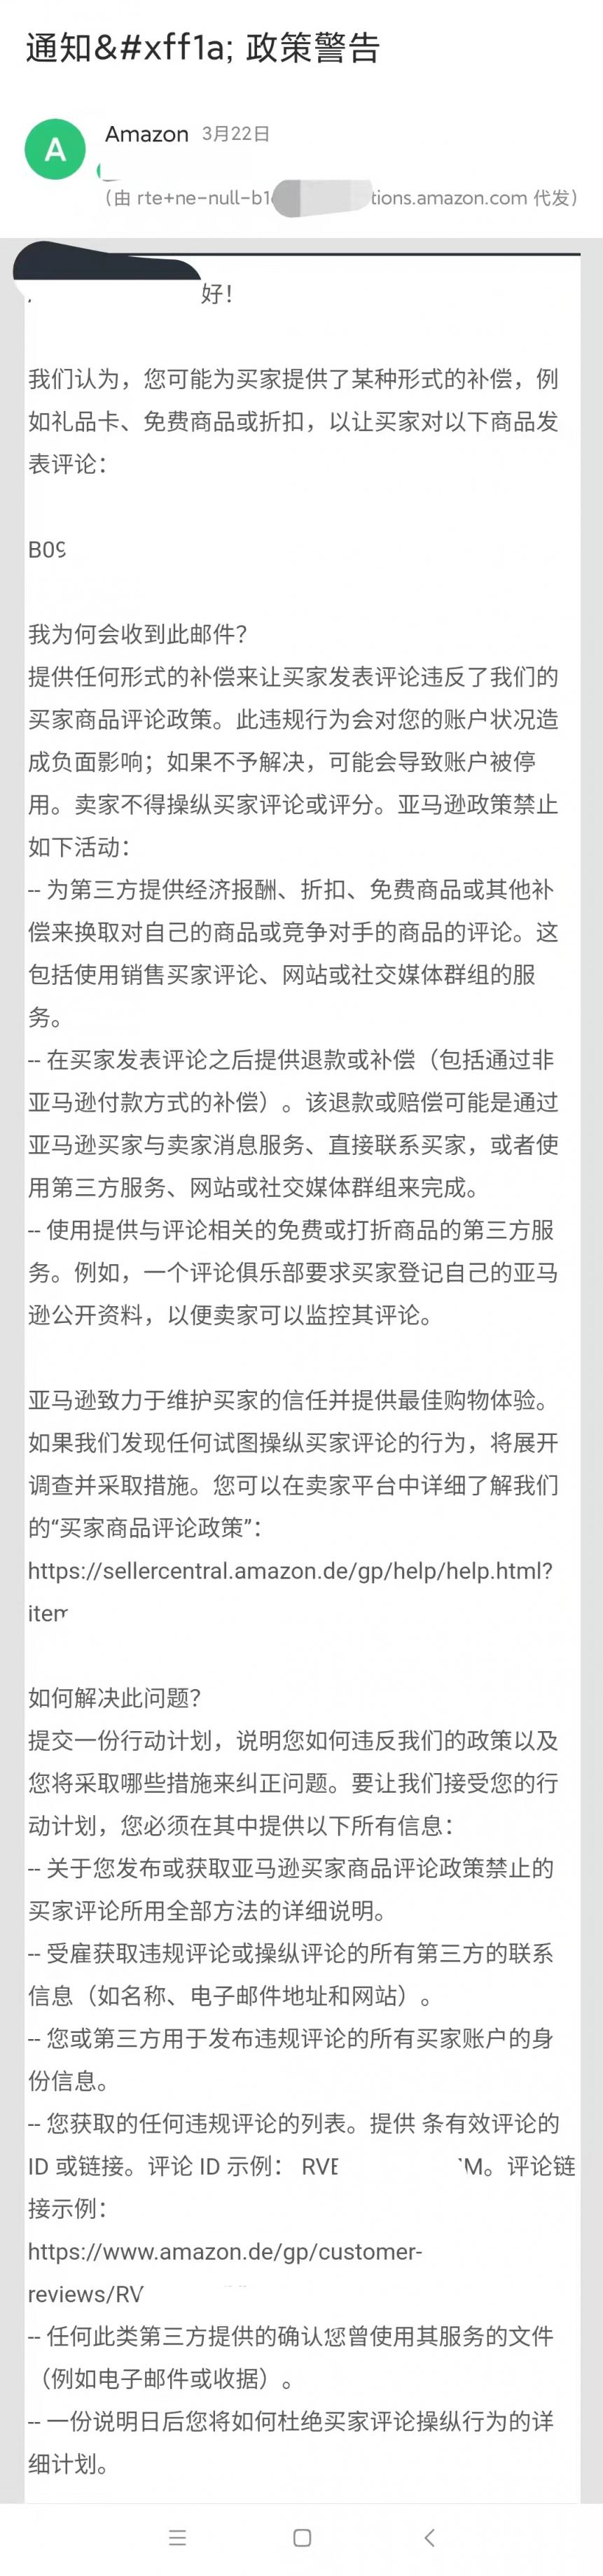 https://wearesellers.oss-cn-shenzhen.aliyuncs.com/questions/20220324/a3049c2457174d8586e41ed7467762b1.jpg